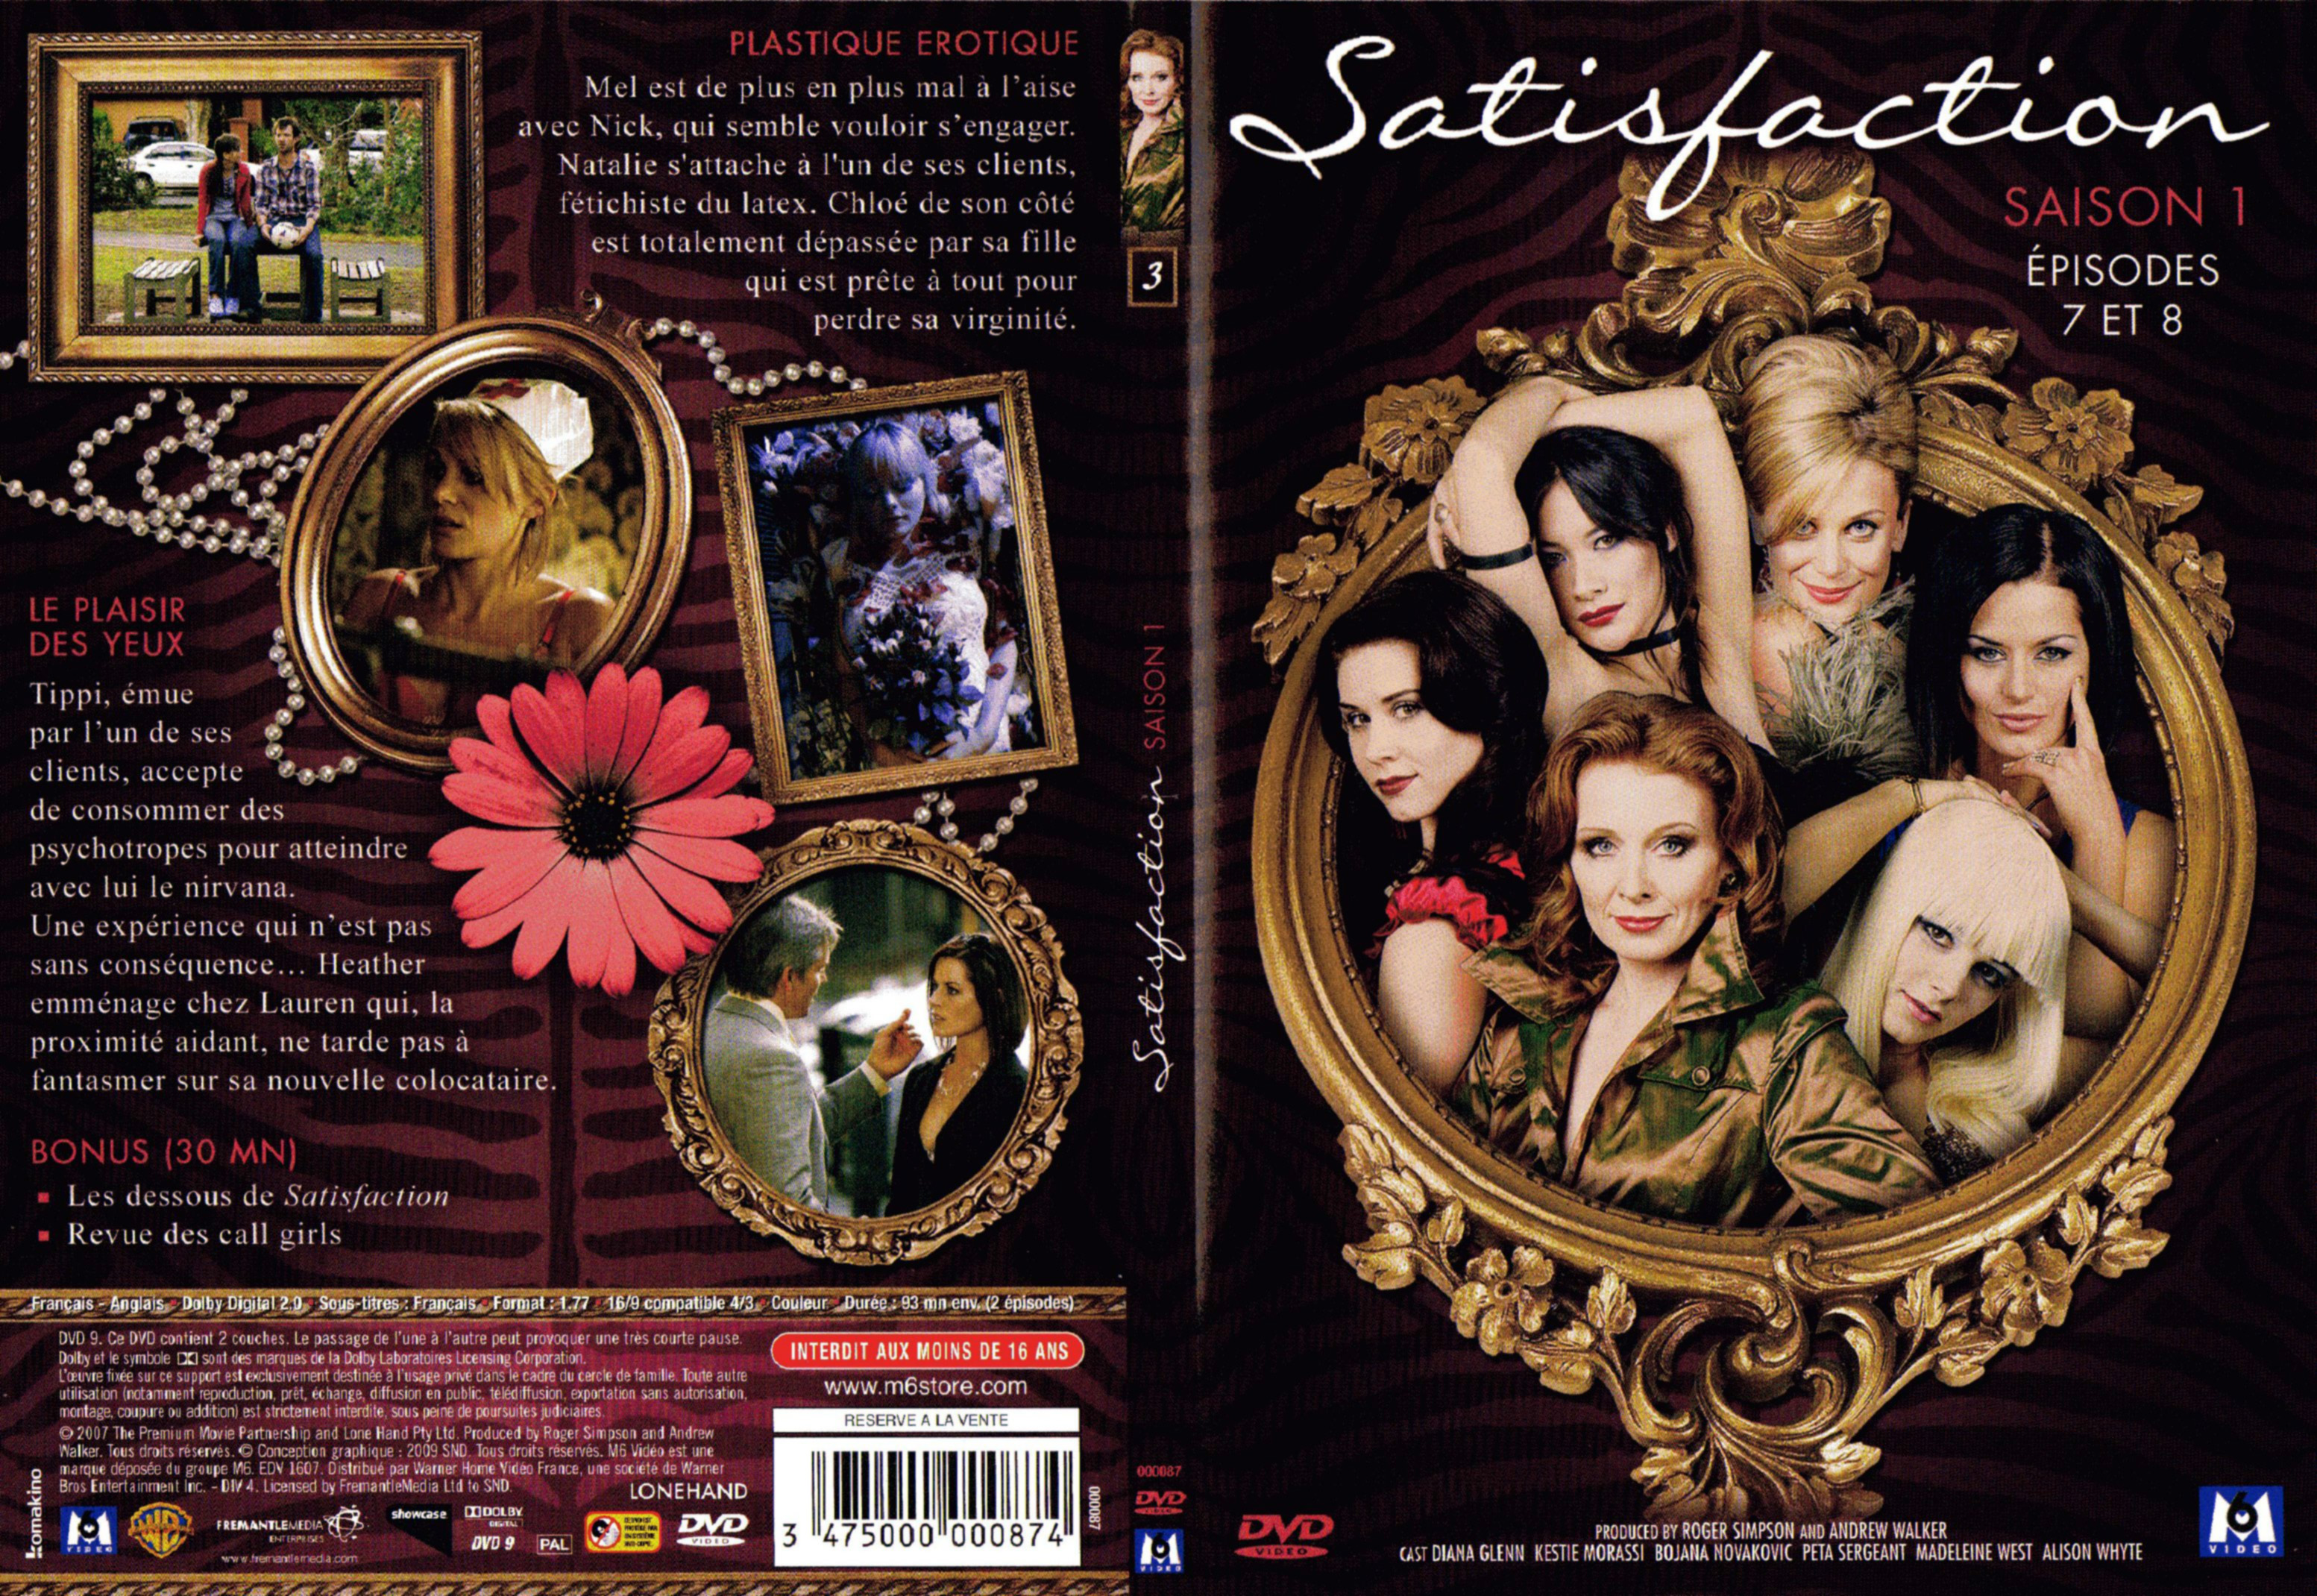 Jaquette DVD Satisfaction Saison 1 DVD 3